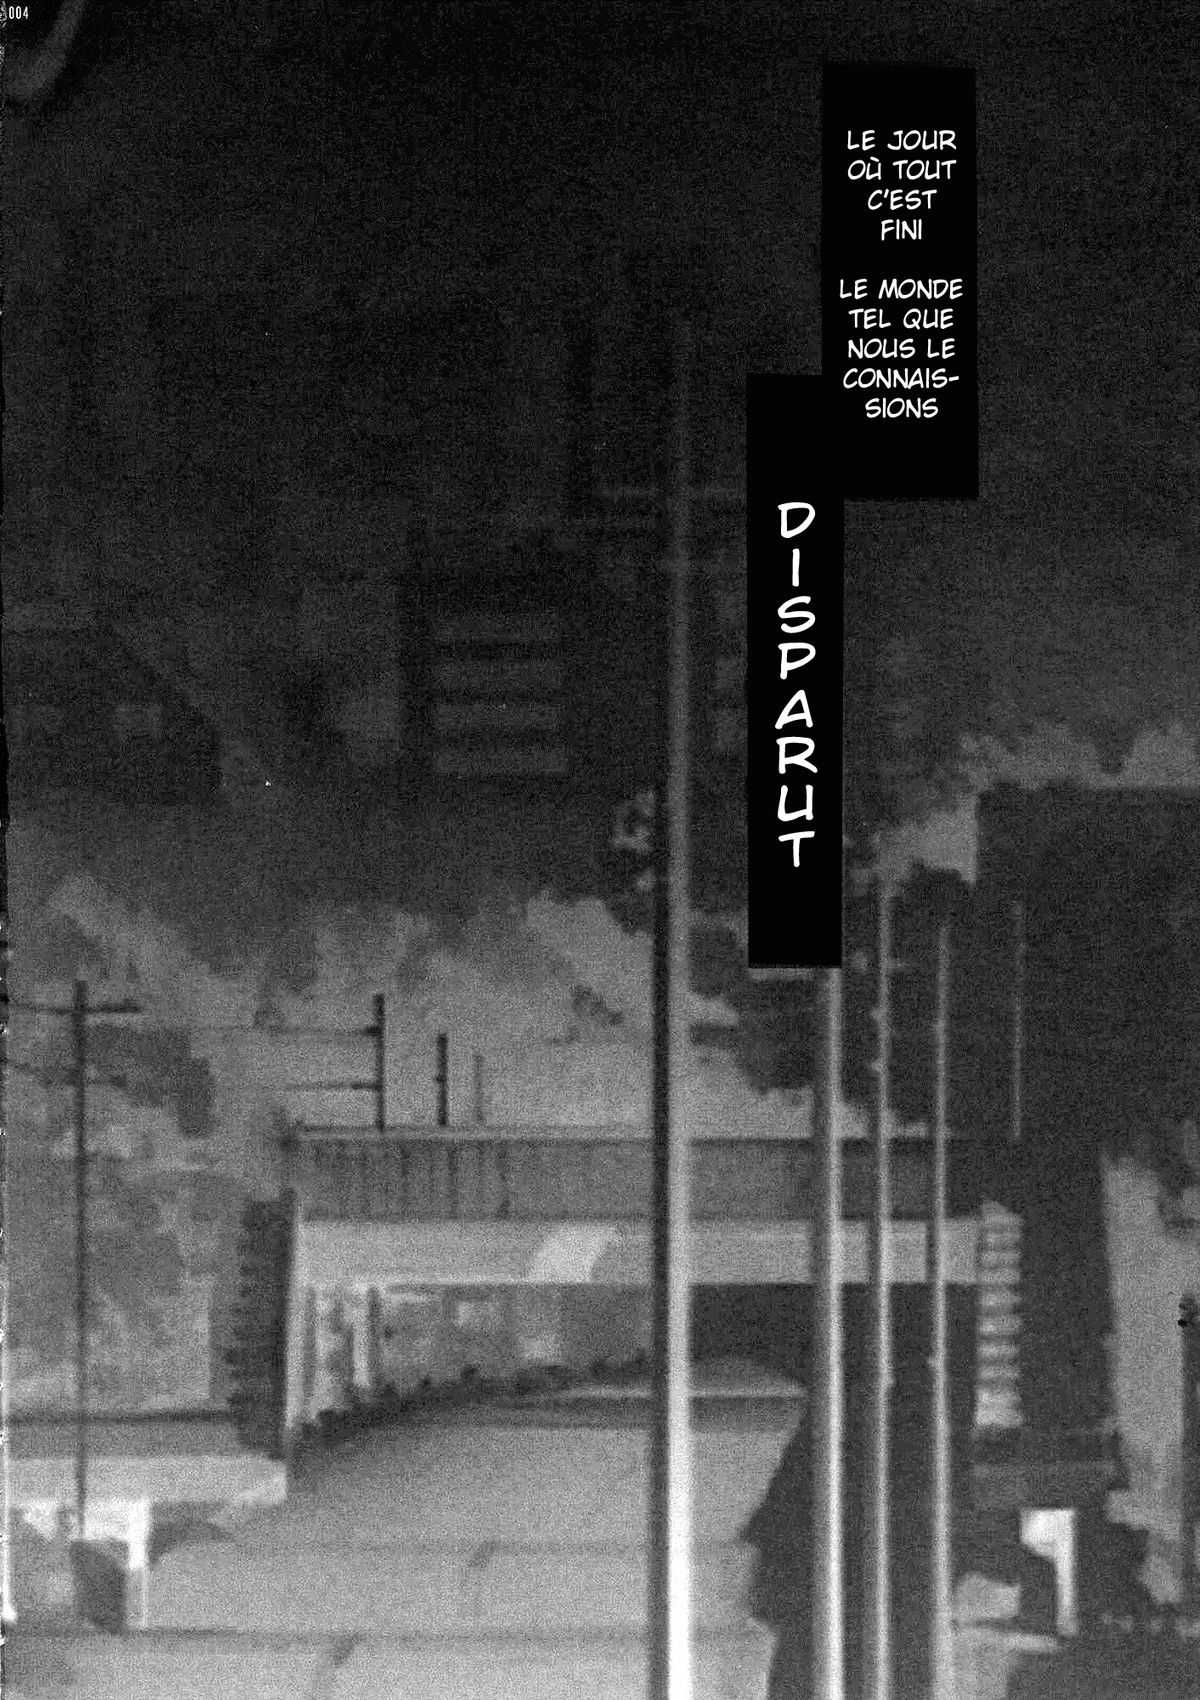 [CLUB54(Ichigo Mark)] HIGHRISK OF THE DEAD (high school of the dead) [FRENCH] [club54 (いちごまぁく)] 禁断の黙示録 ハイリスク・オブ・デッド (学園黙示録)